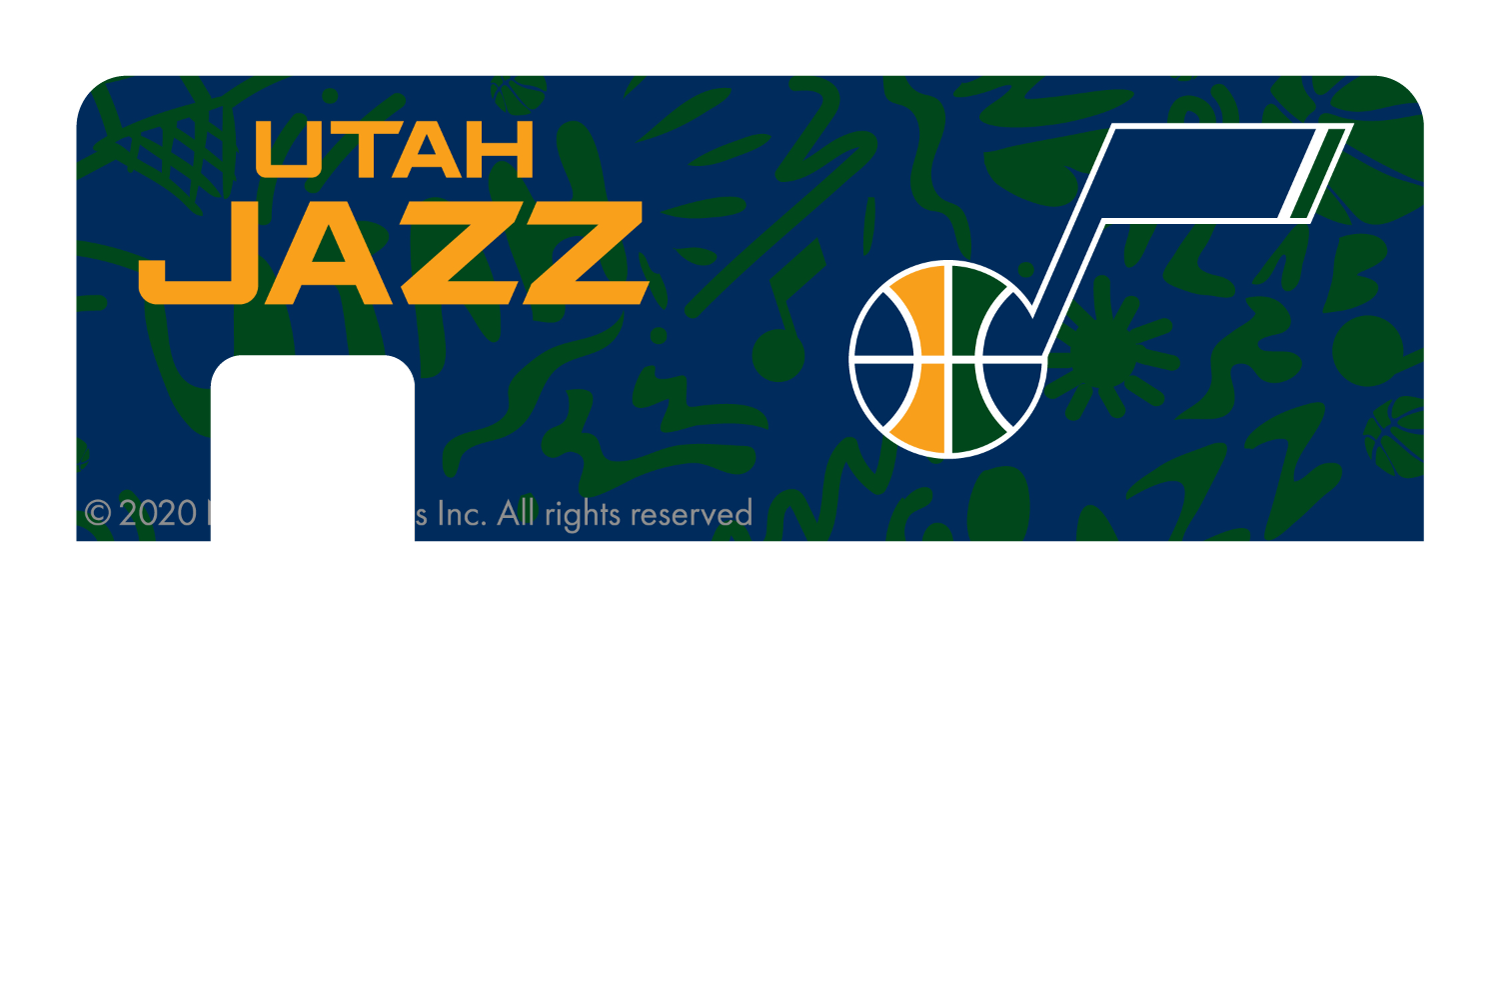 Utah Jazz: Team Mural